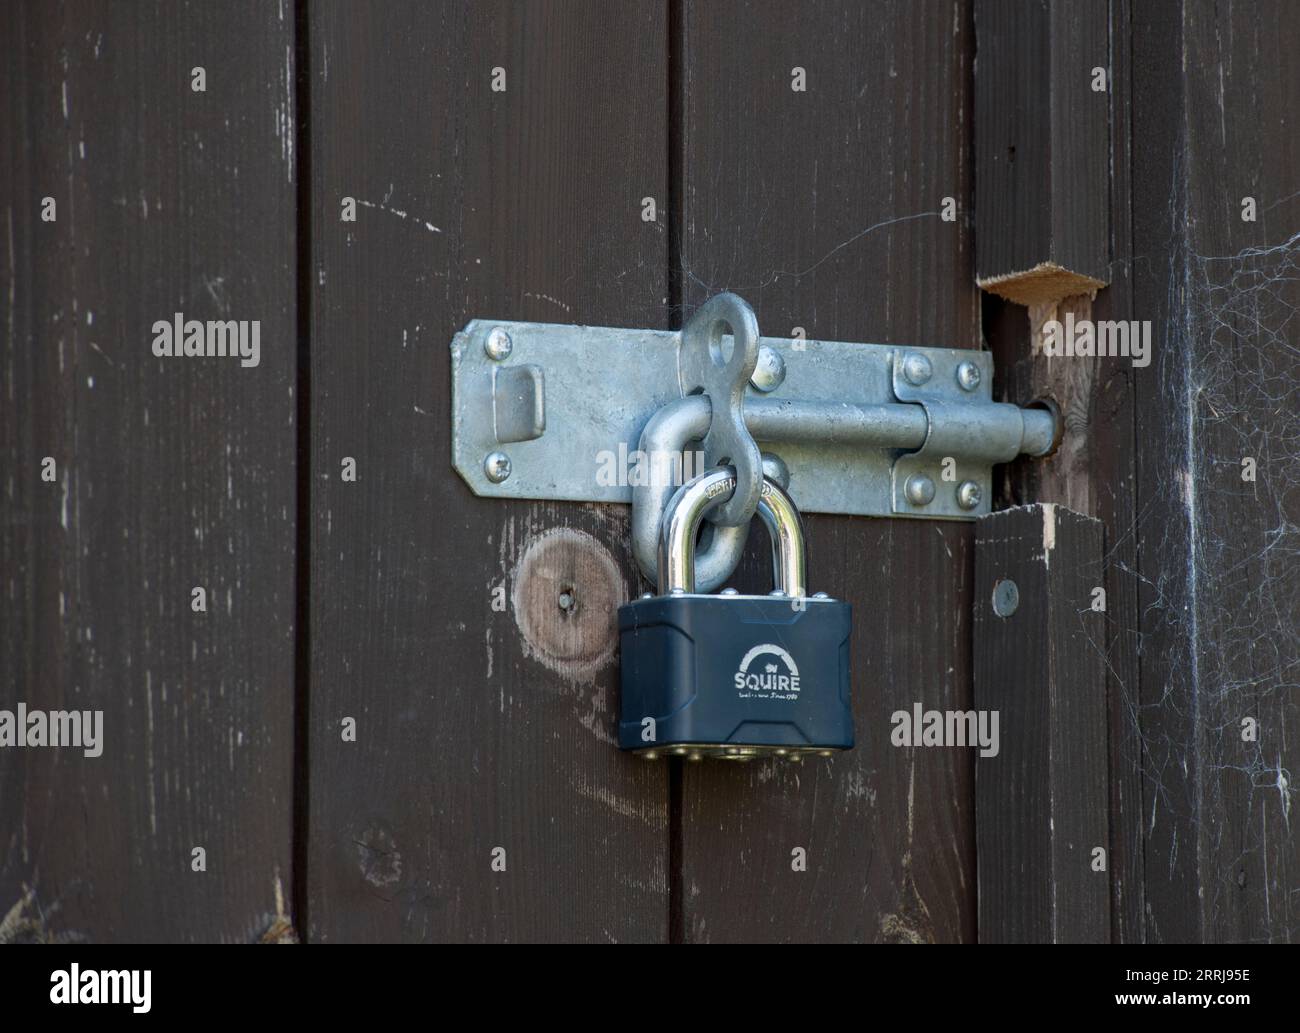 Extrem sichere Tür mit vielen Schlösser, Yale, Schloss und Riegel  Stockfotografie - Alamy